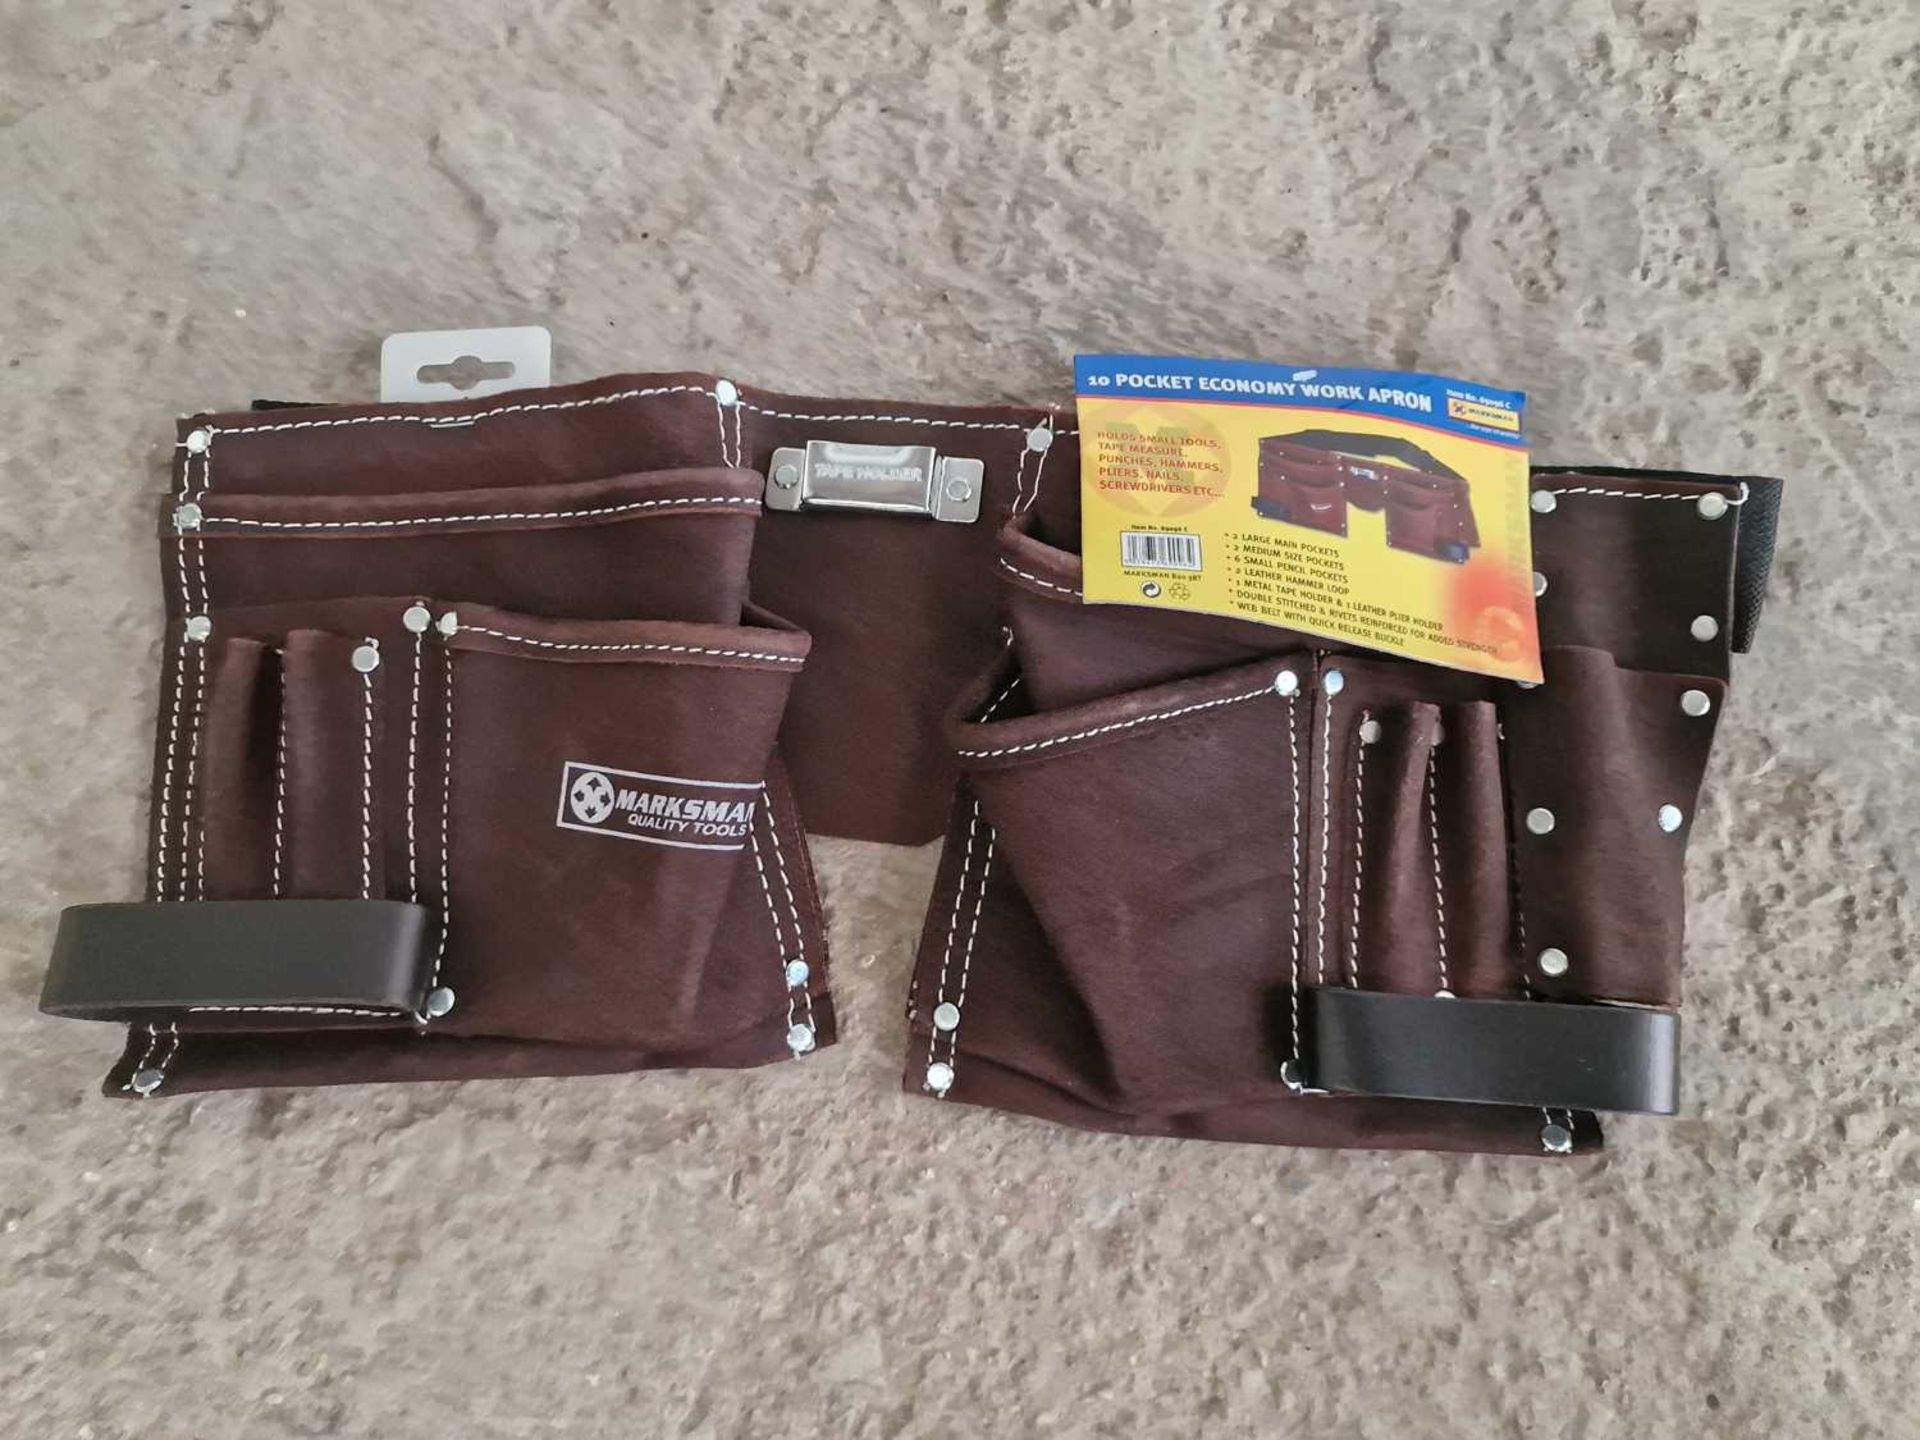 Marksman 10 Pocket Leather Tool Belt - Image 2 of 4